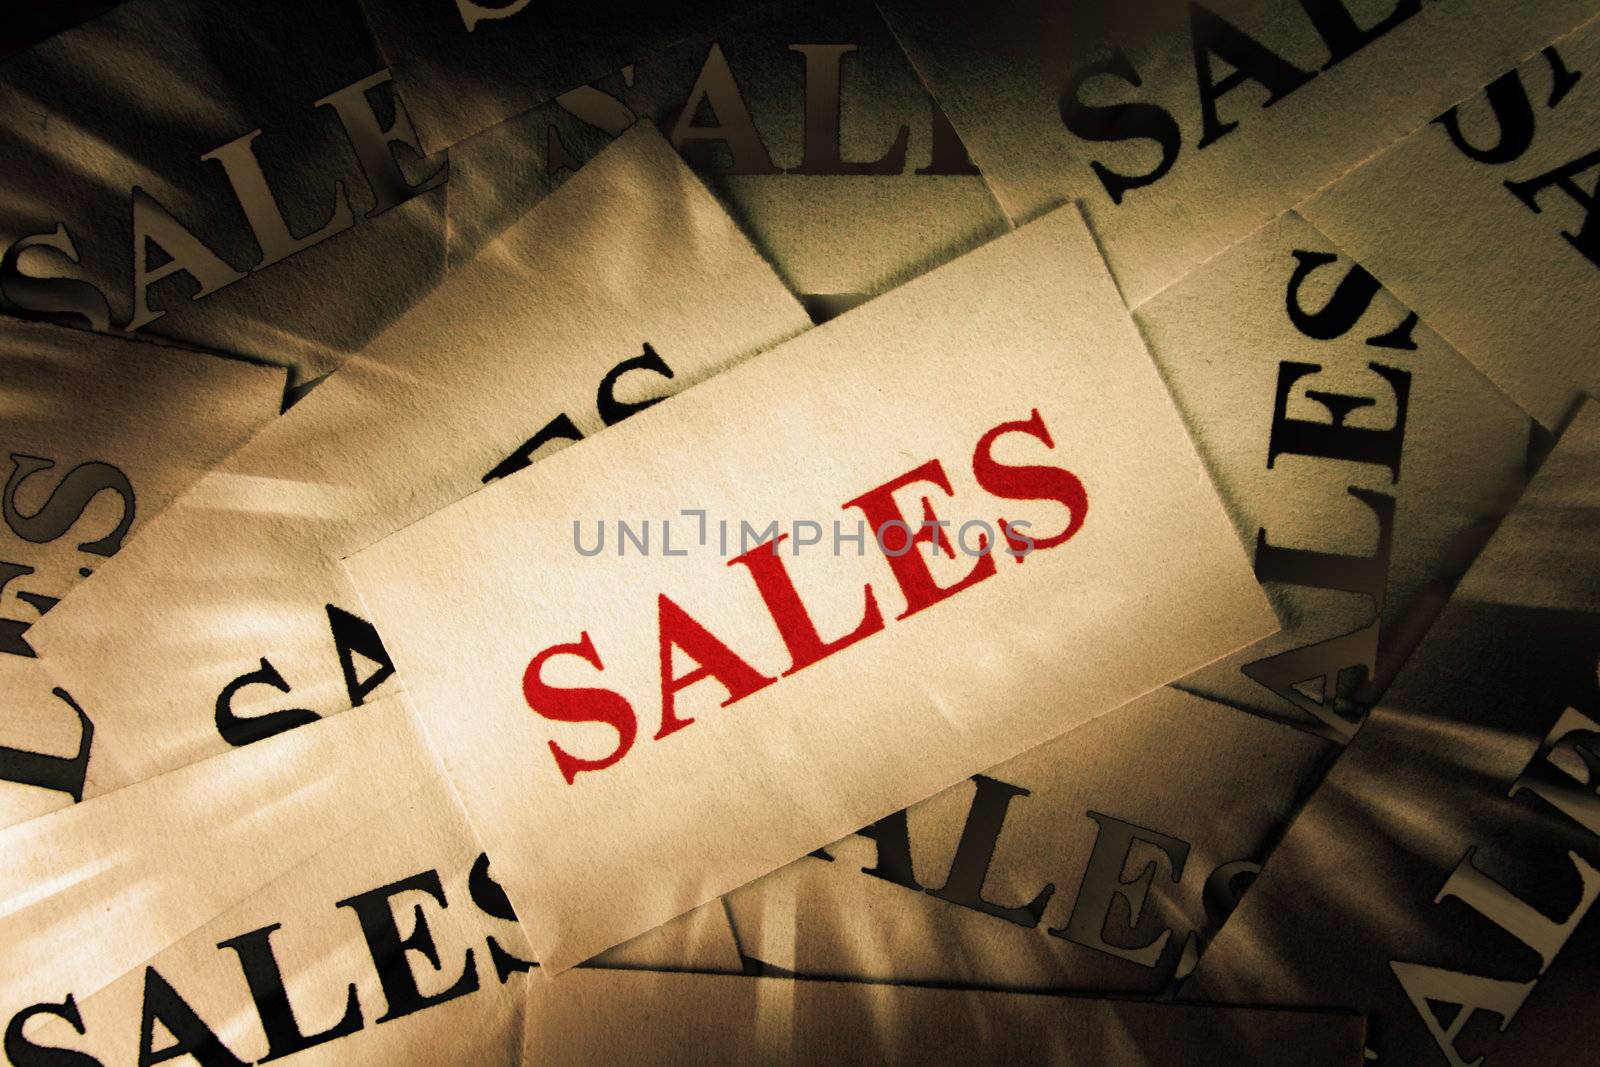 Sales by Hasenonkel